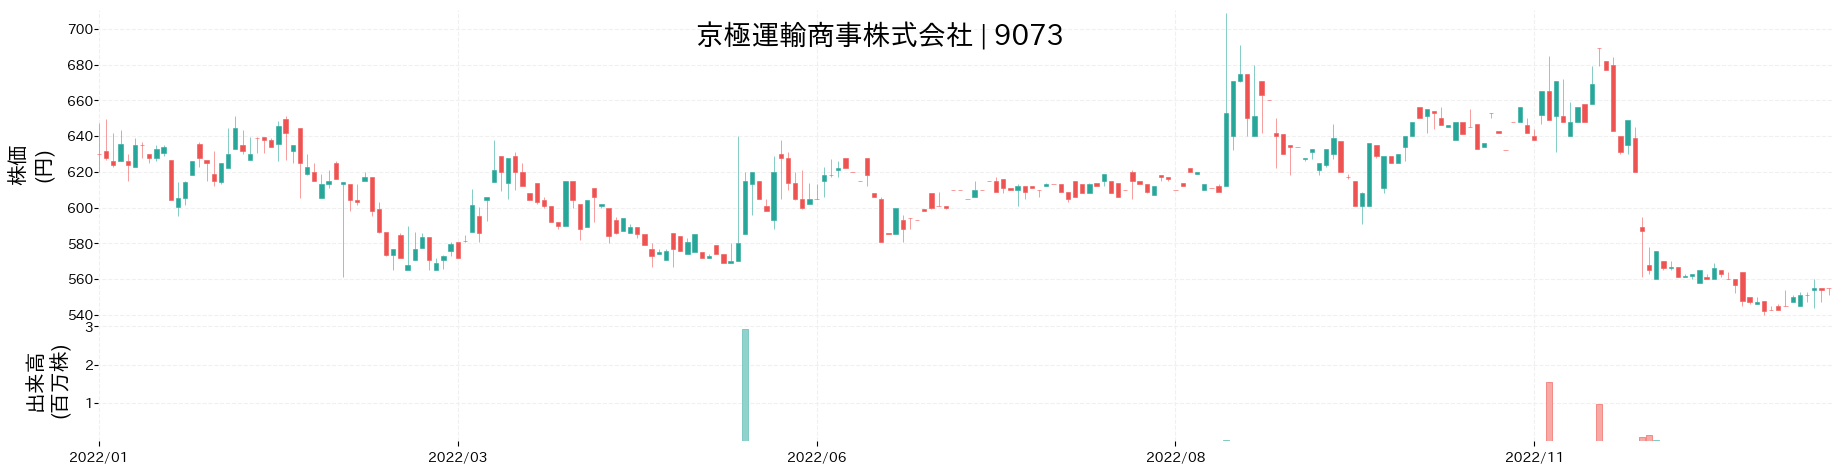 京極運輸商事の株価推移(2022)